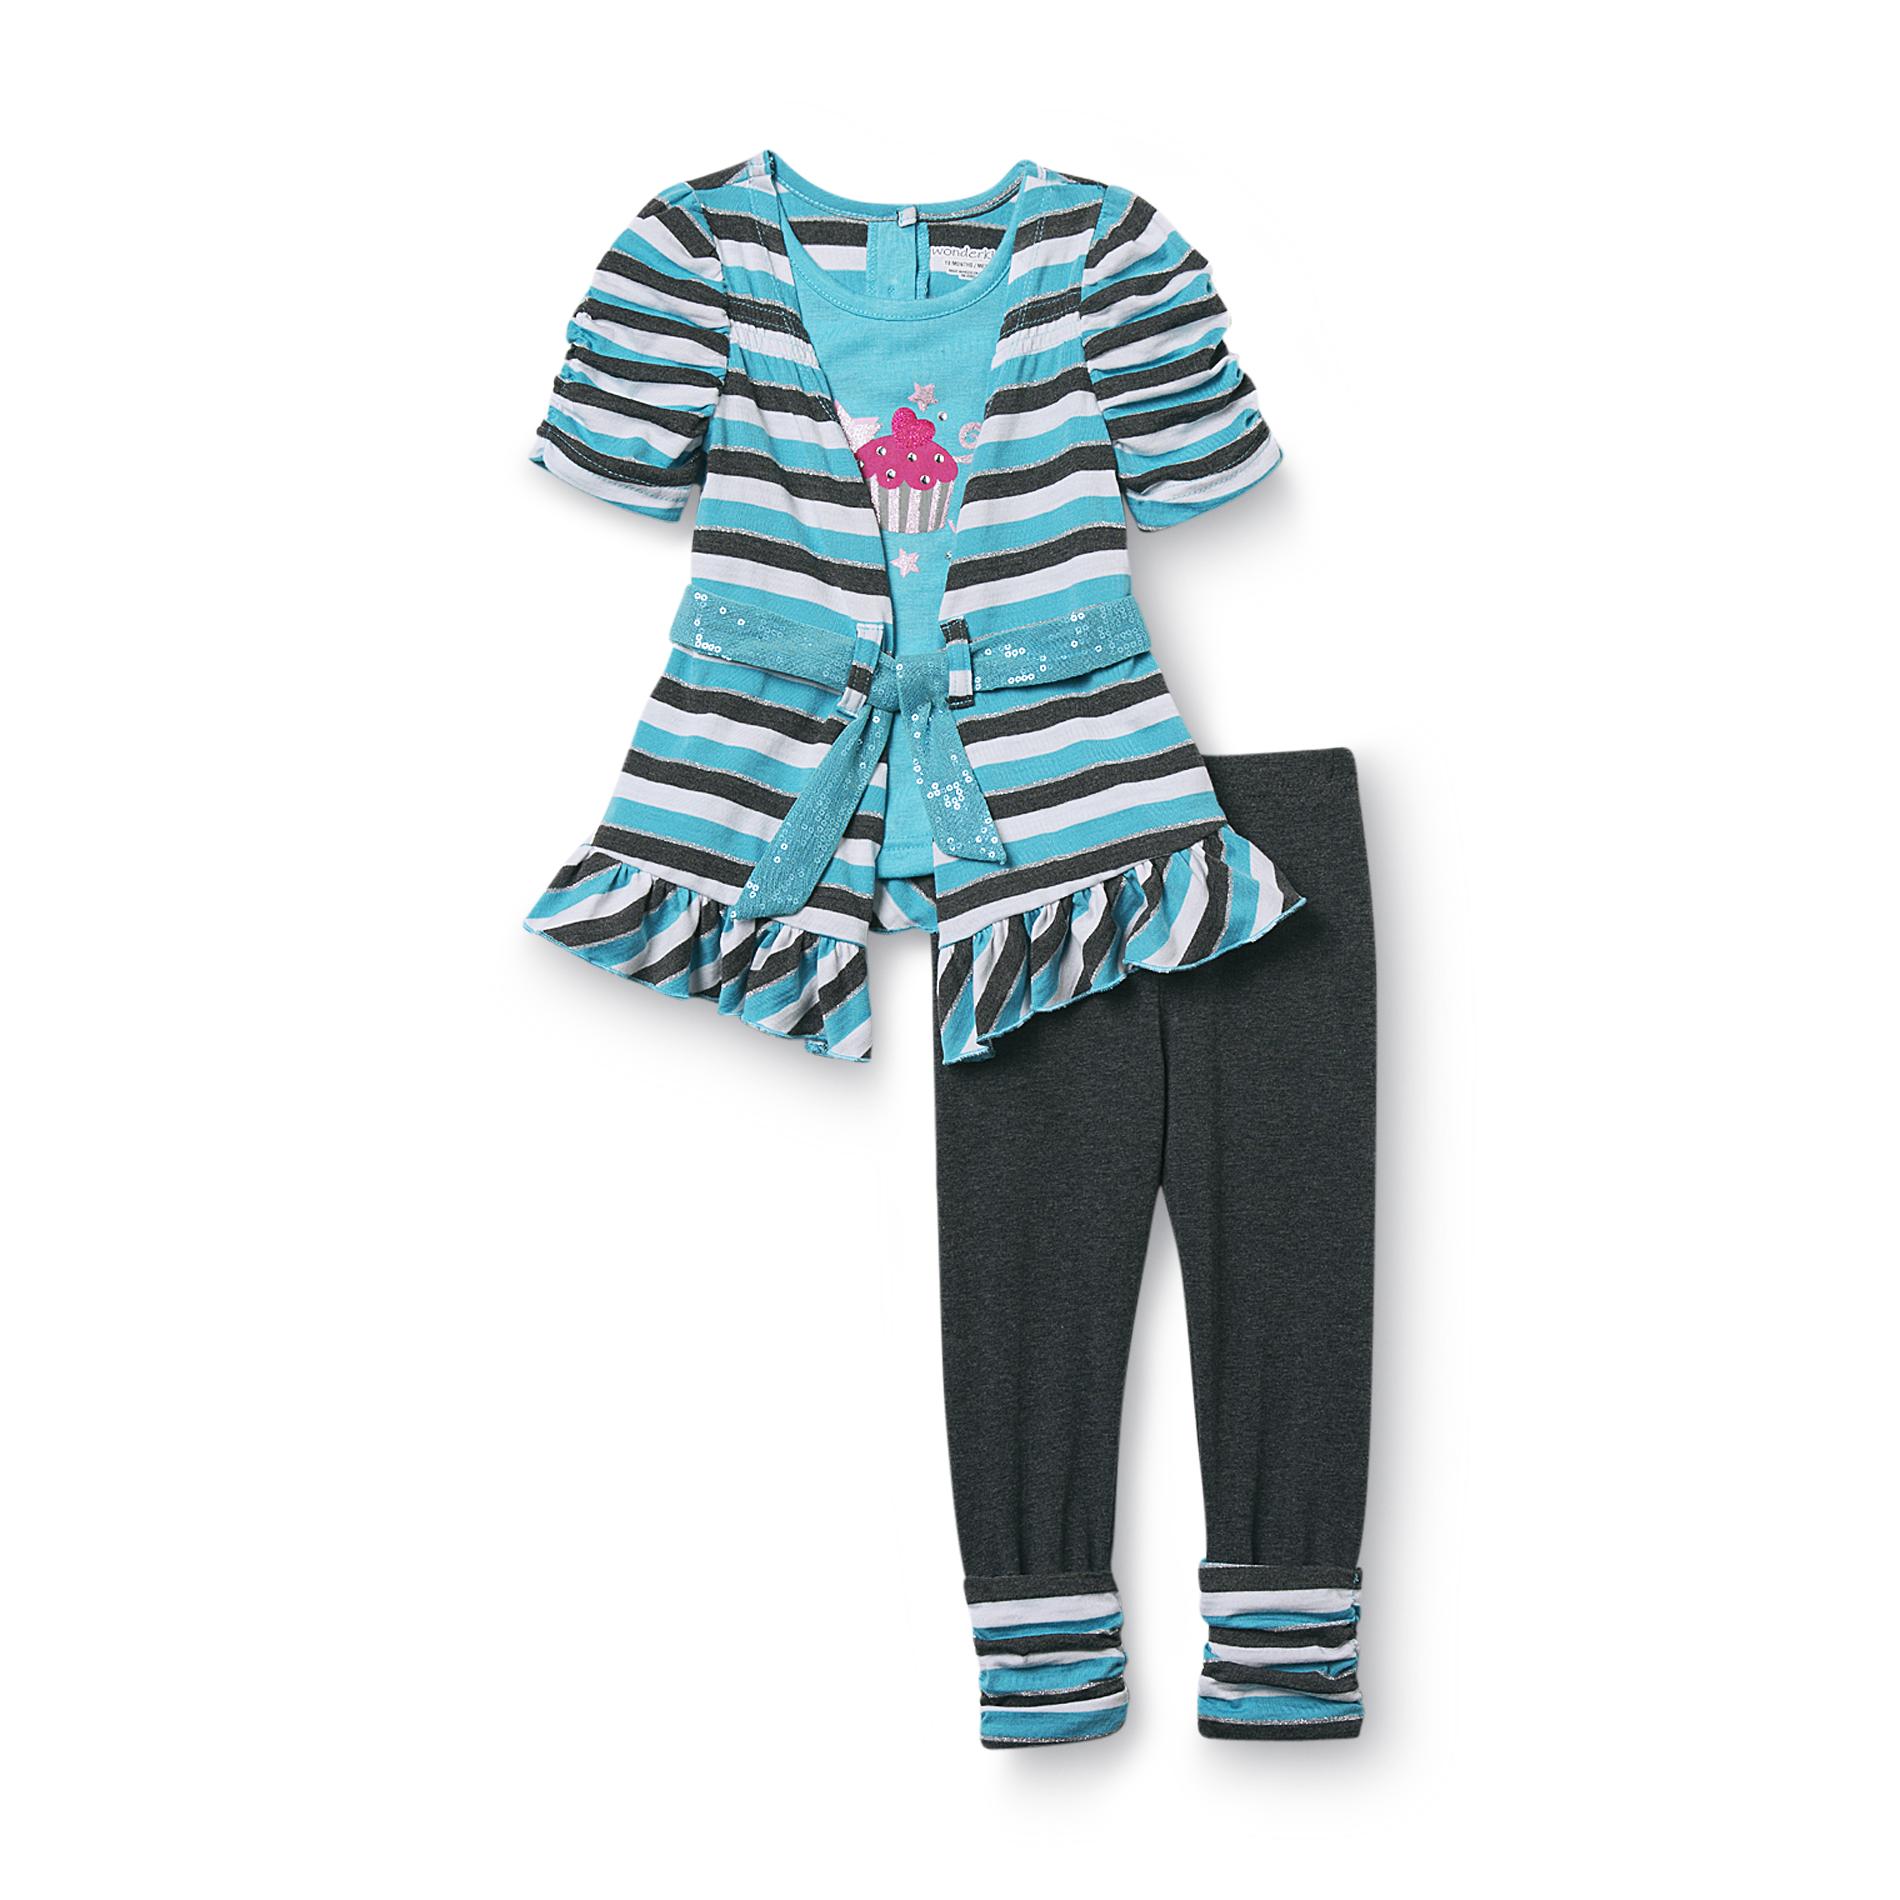 WonderKids Infant & Toddler Girl's Shrug Top & Leggings - Striped